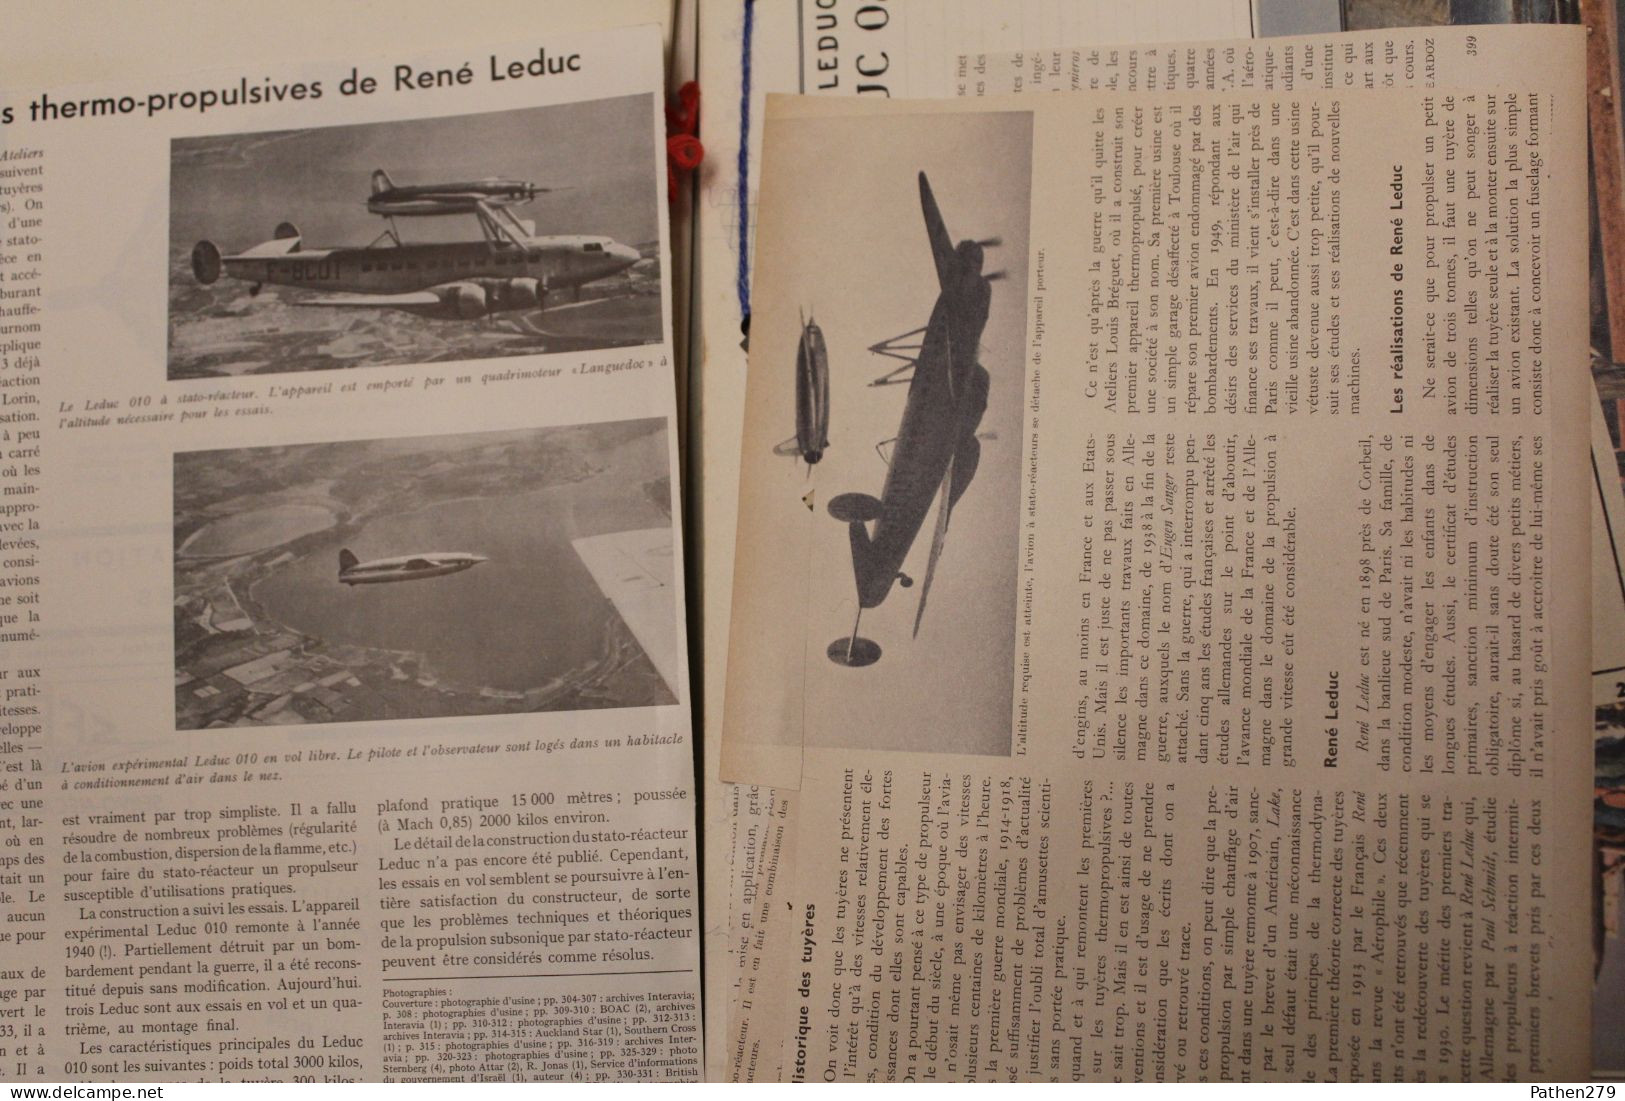 Dossier avions français René Leduc 010-016 / 021 / 022